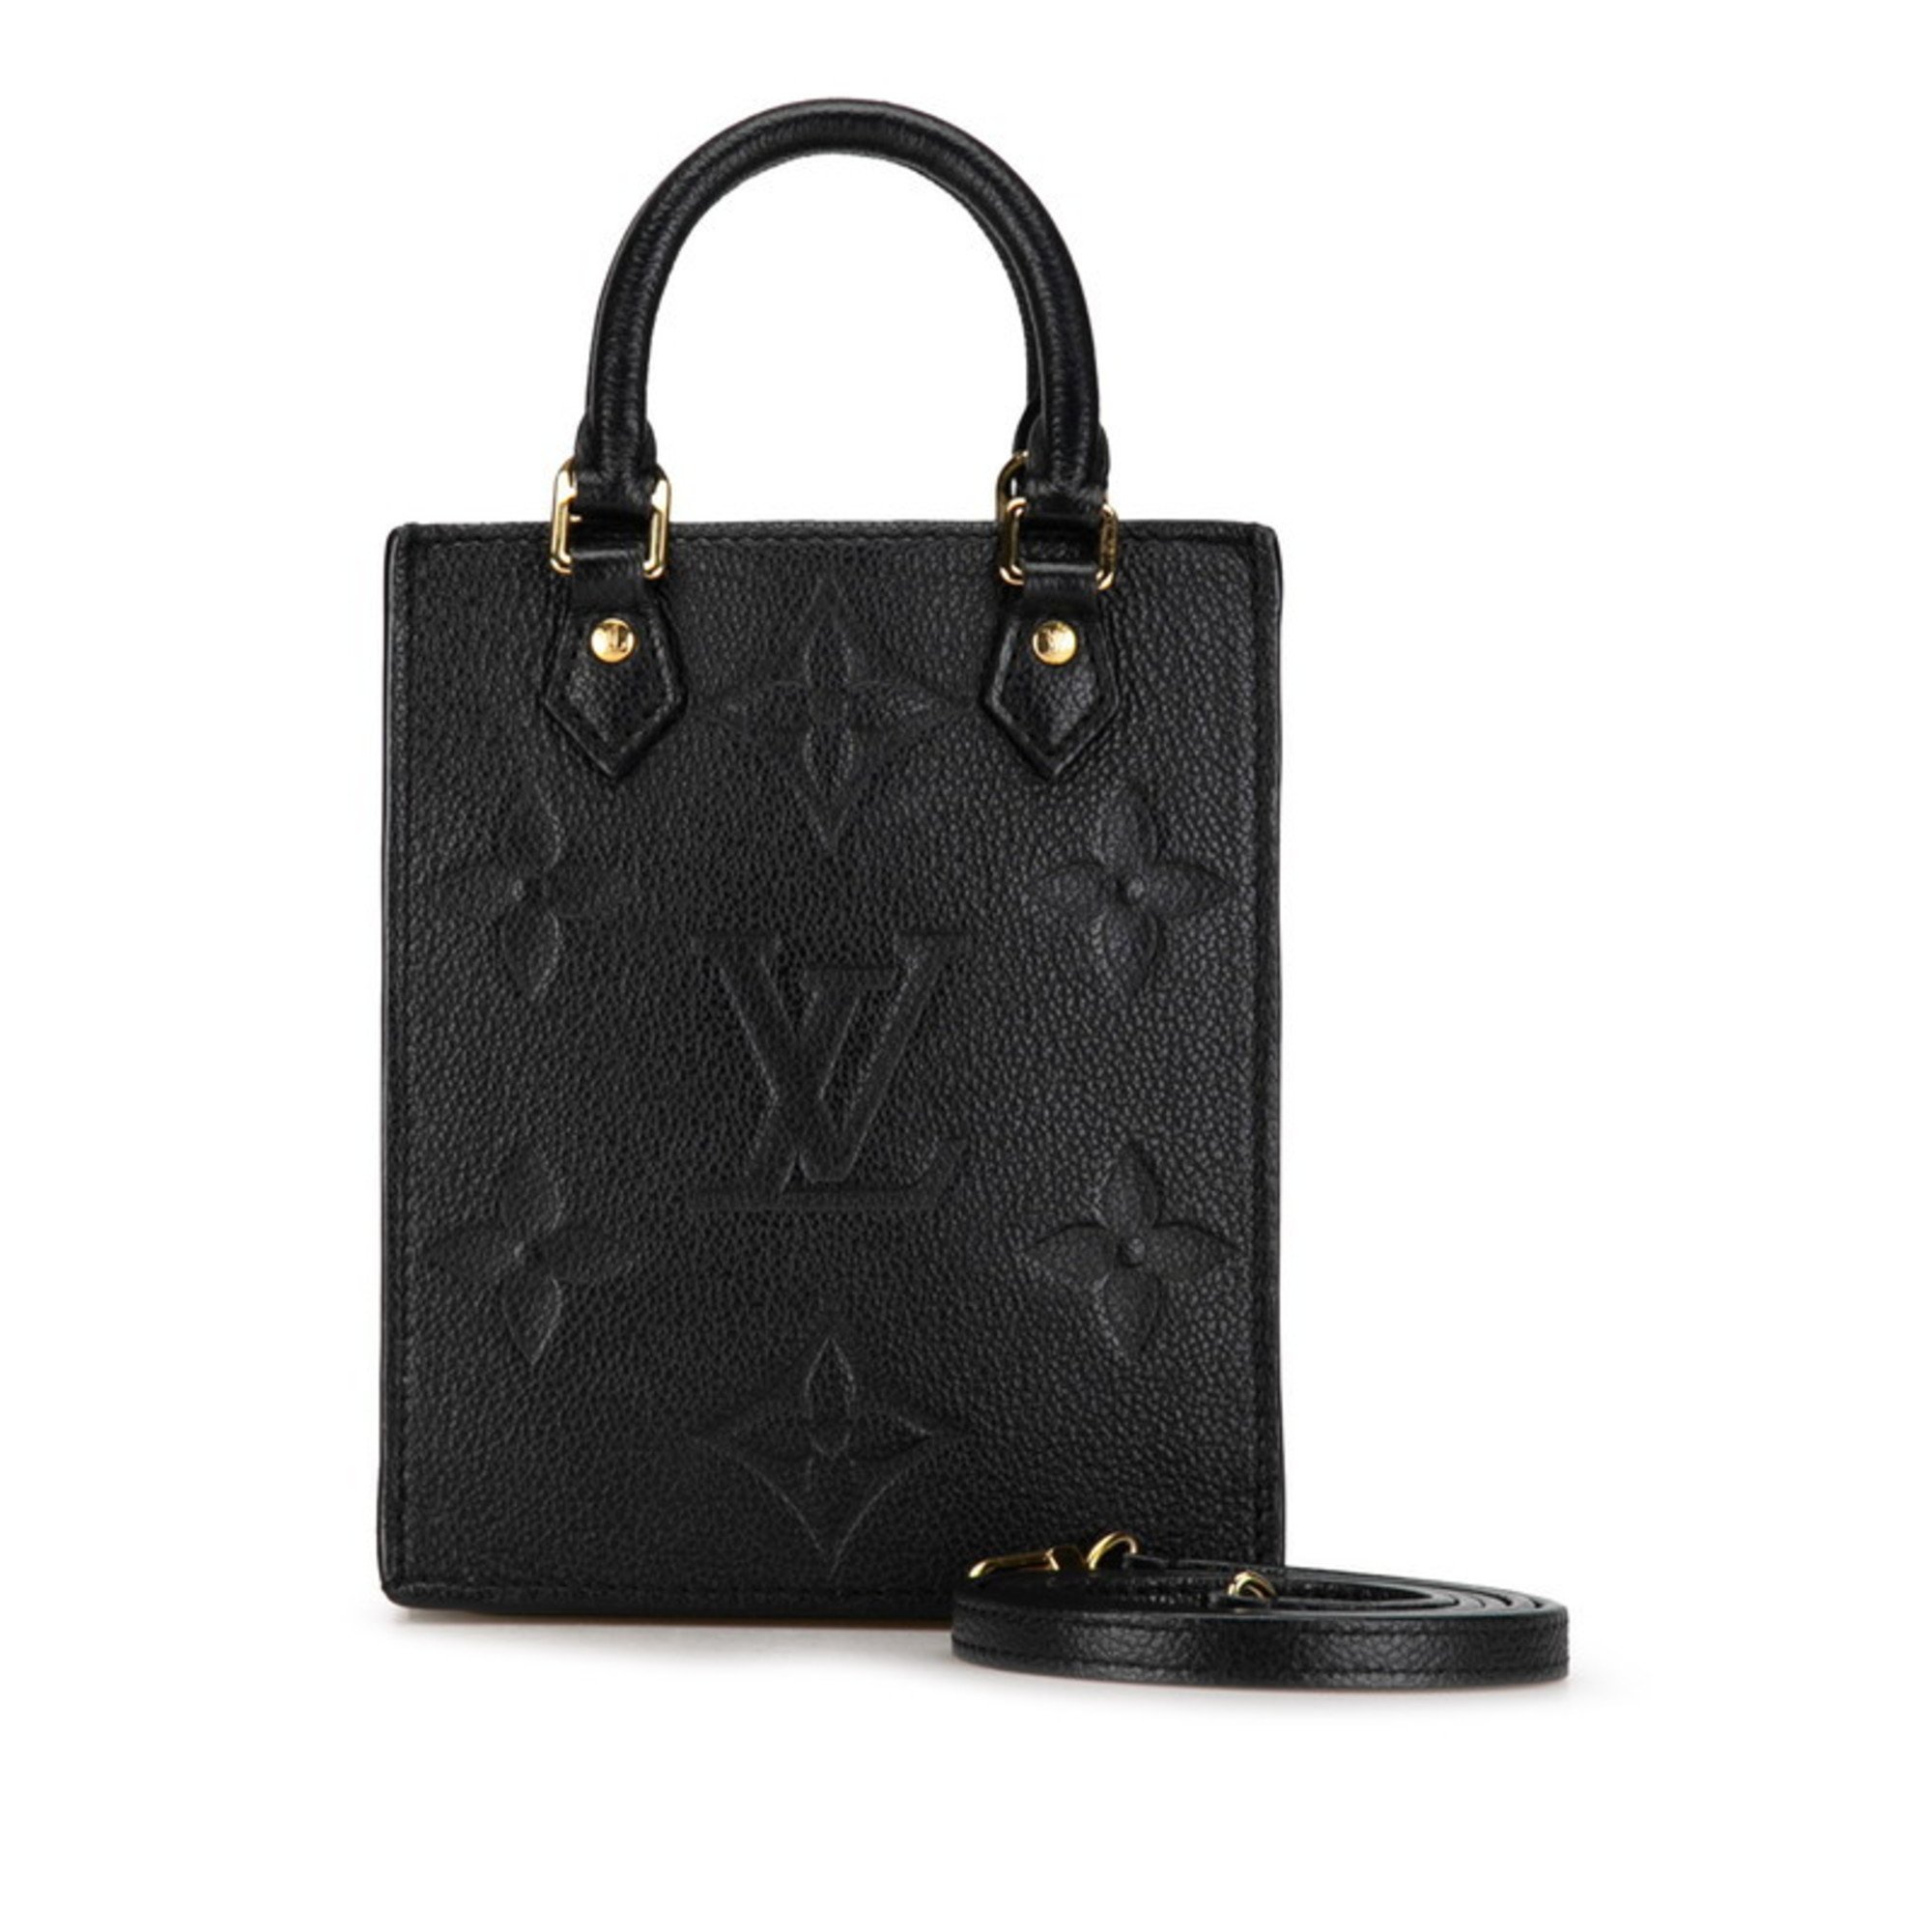 Louis Vuitton Monogram Empreinte Petite Sac Plat Handbag Shoulder Bag M81417 Noir Black Leather Women's LOUIS VUITTON